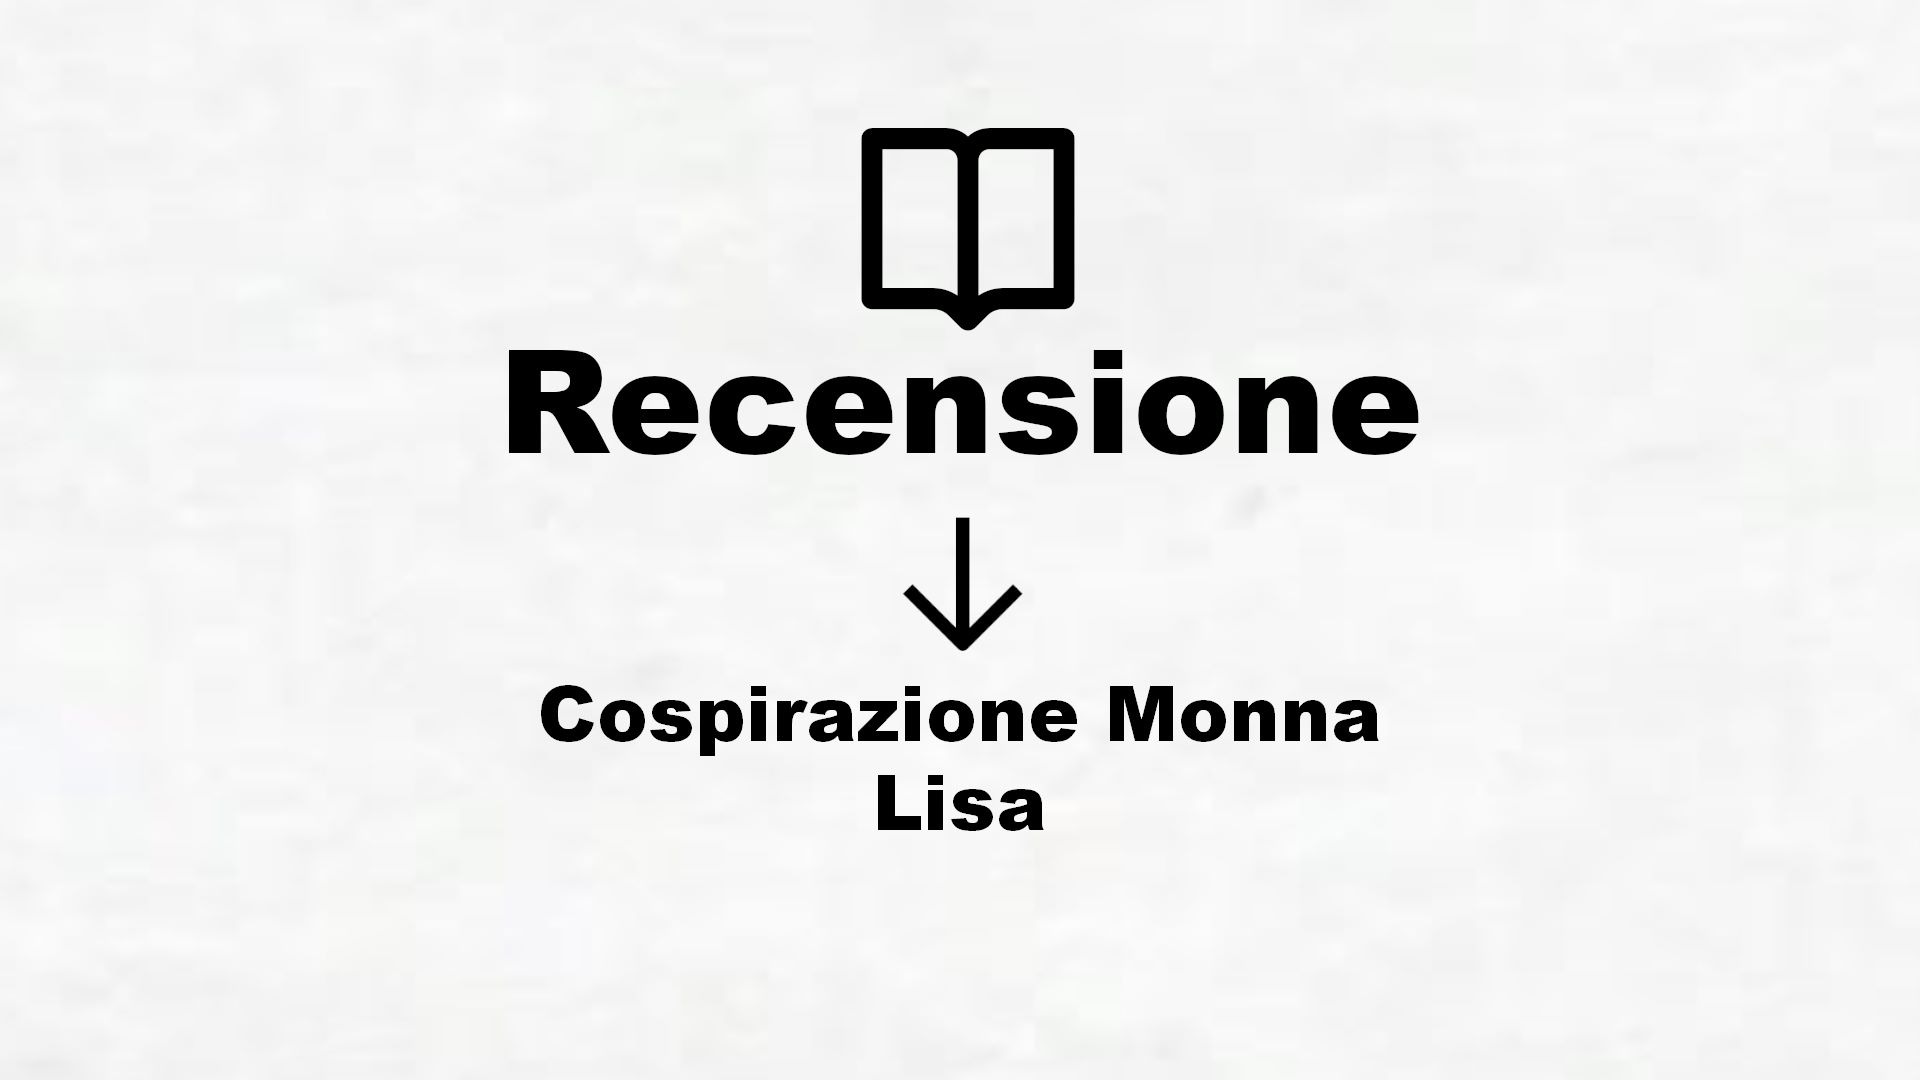 Cospirazione Monna Lisa – Recensione Libro